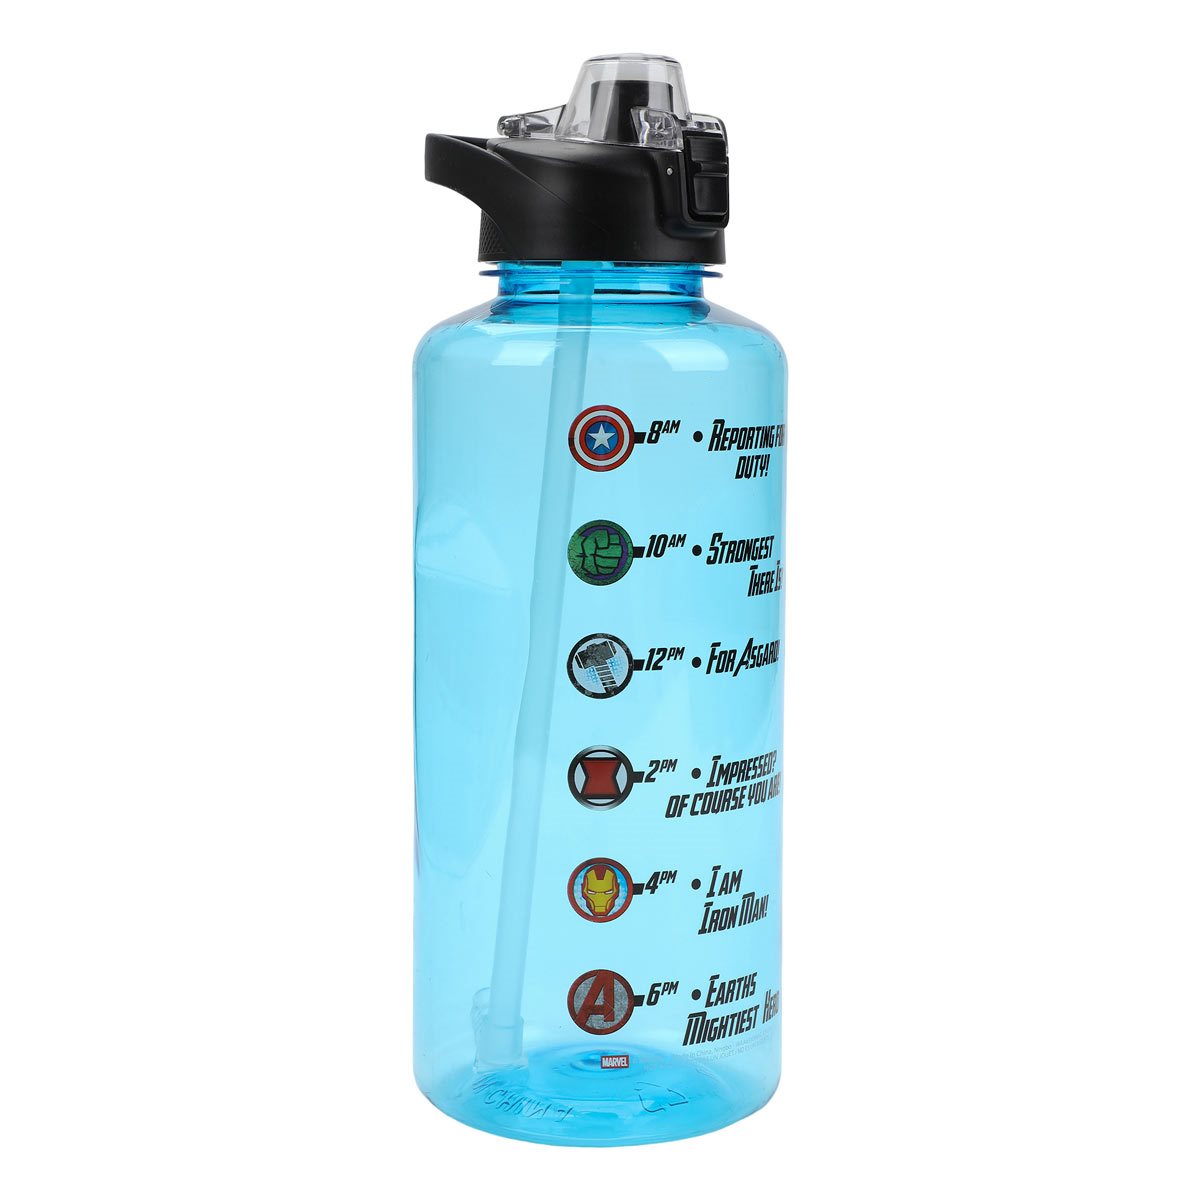 Spider-Man BIOWORLD 24oz. Water Bottle